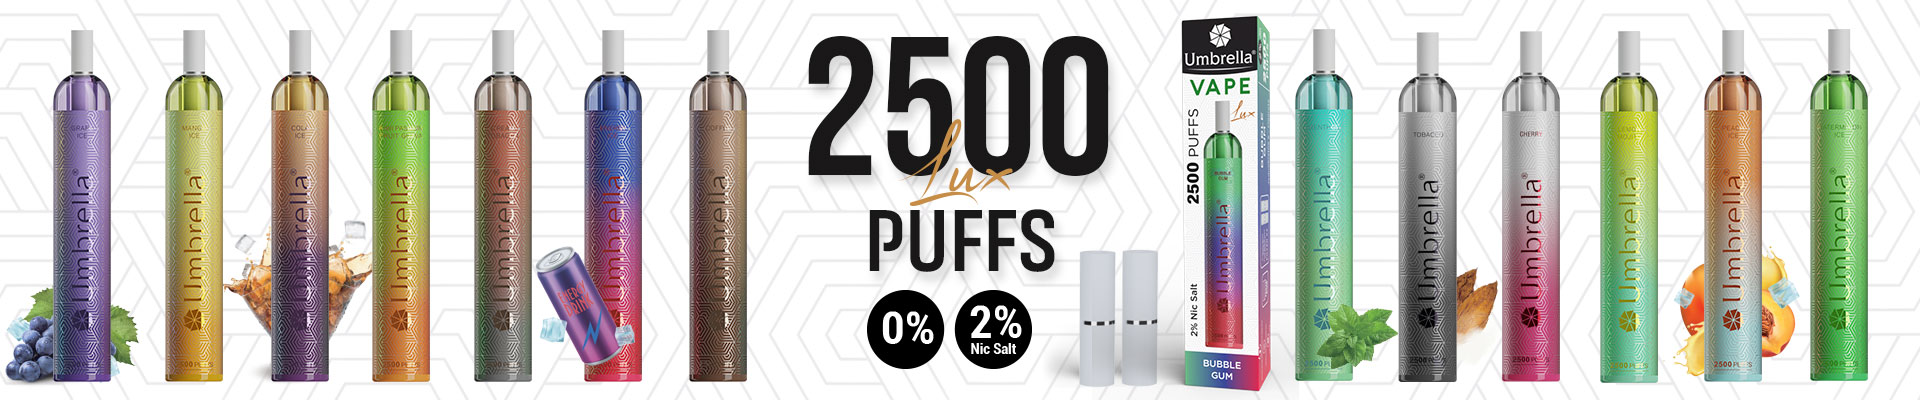 Disposable Vape 2500 puffs